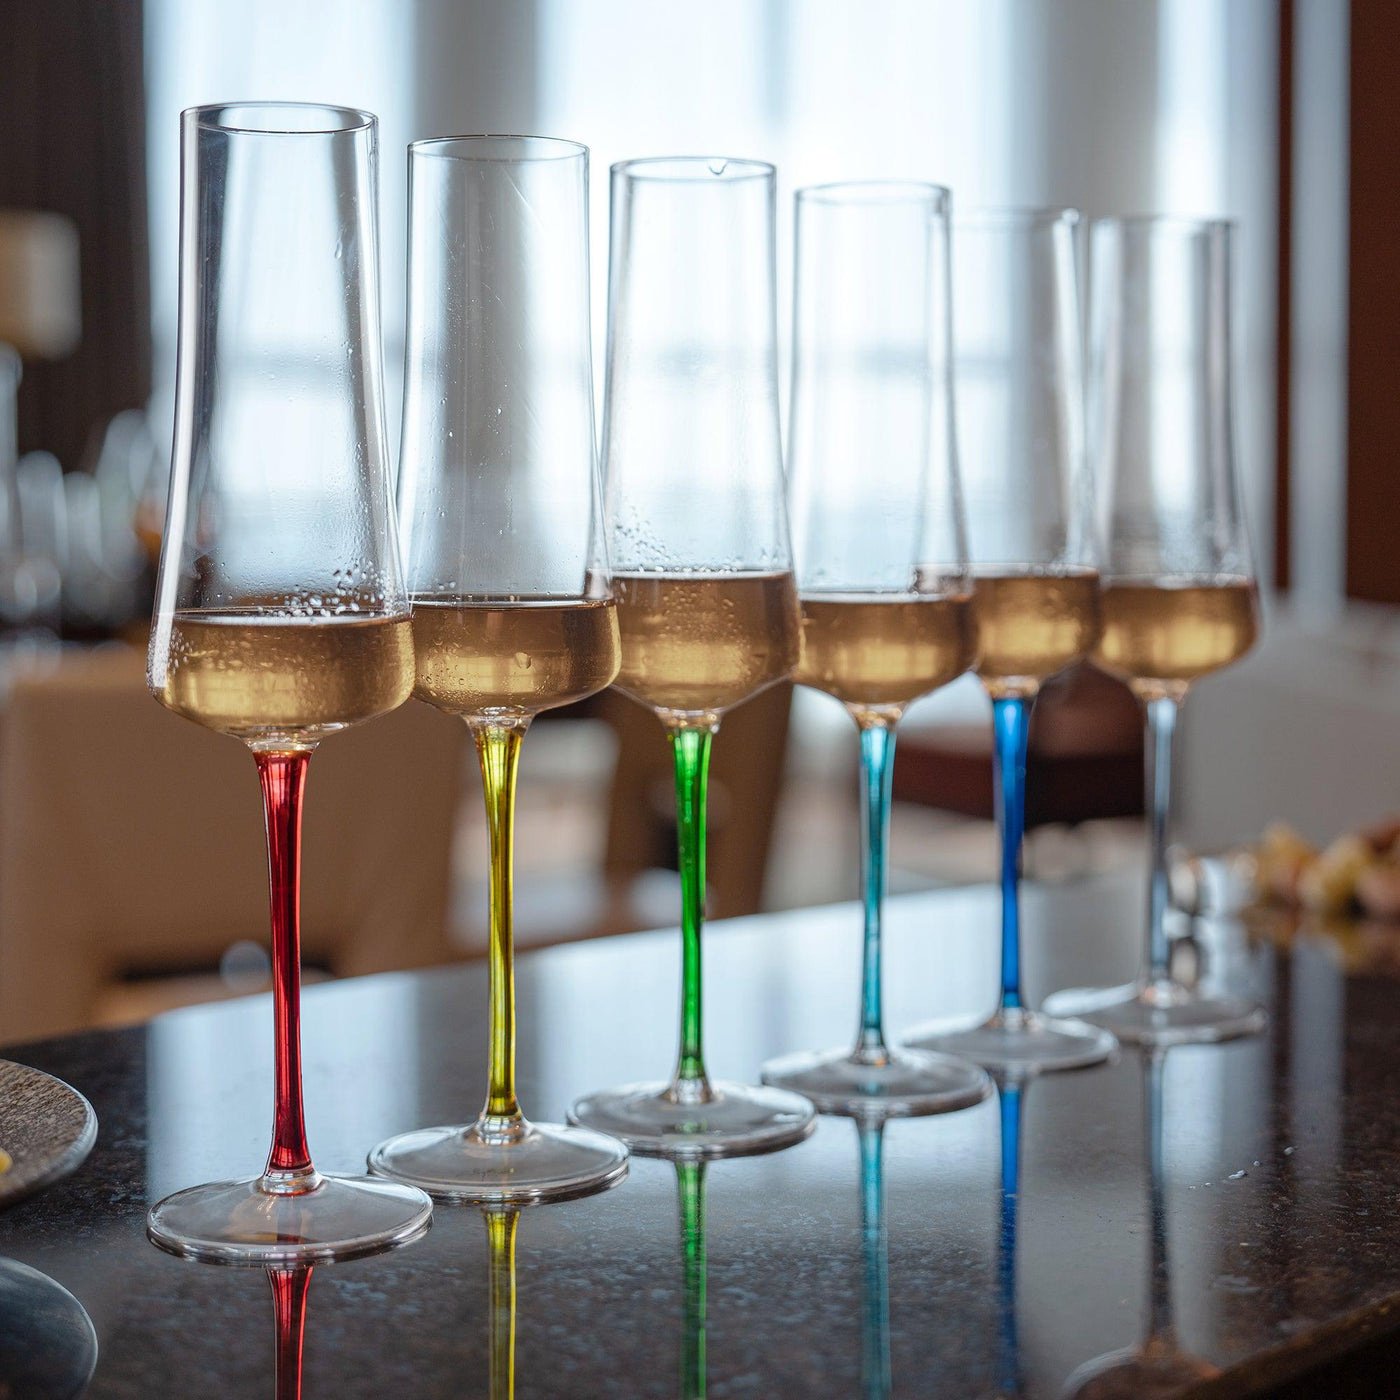 Kit Promocional: Linha Completa Sommelier Hastes Coloridas para Vinho e Espumante (12 Taças)